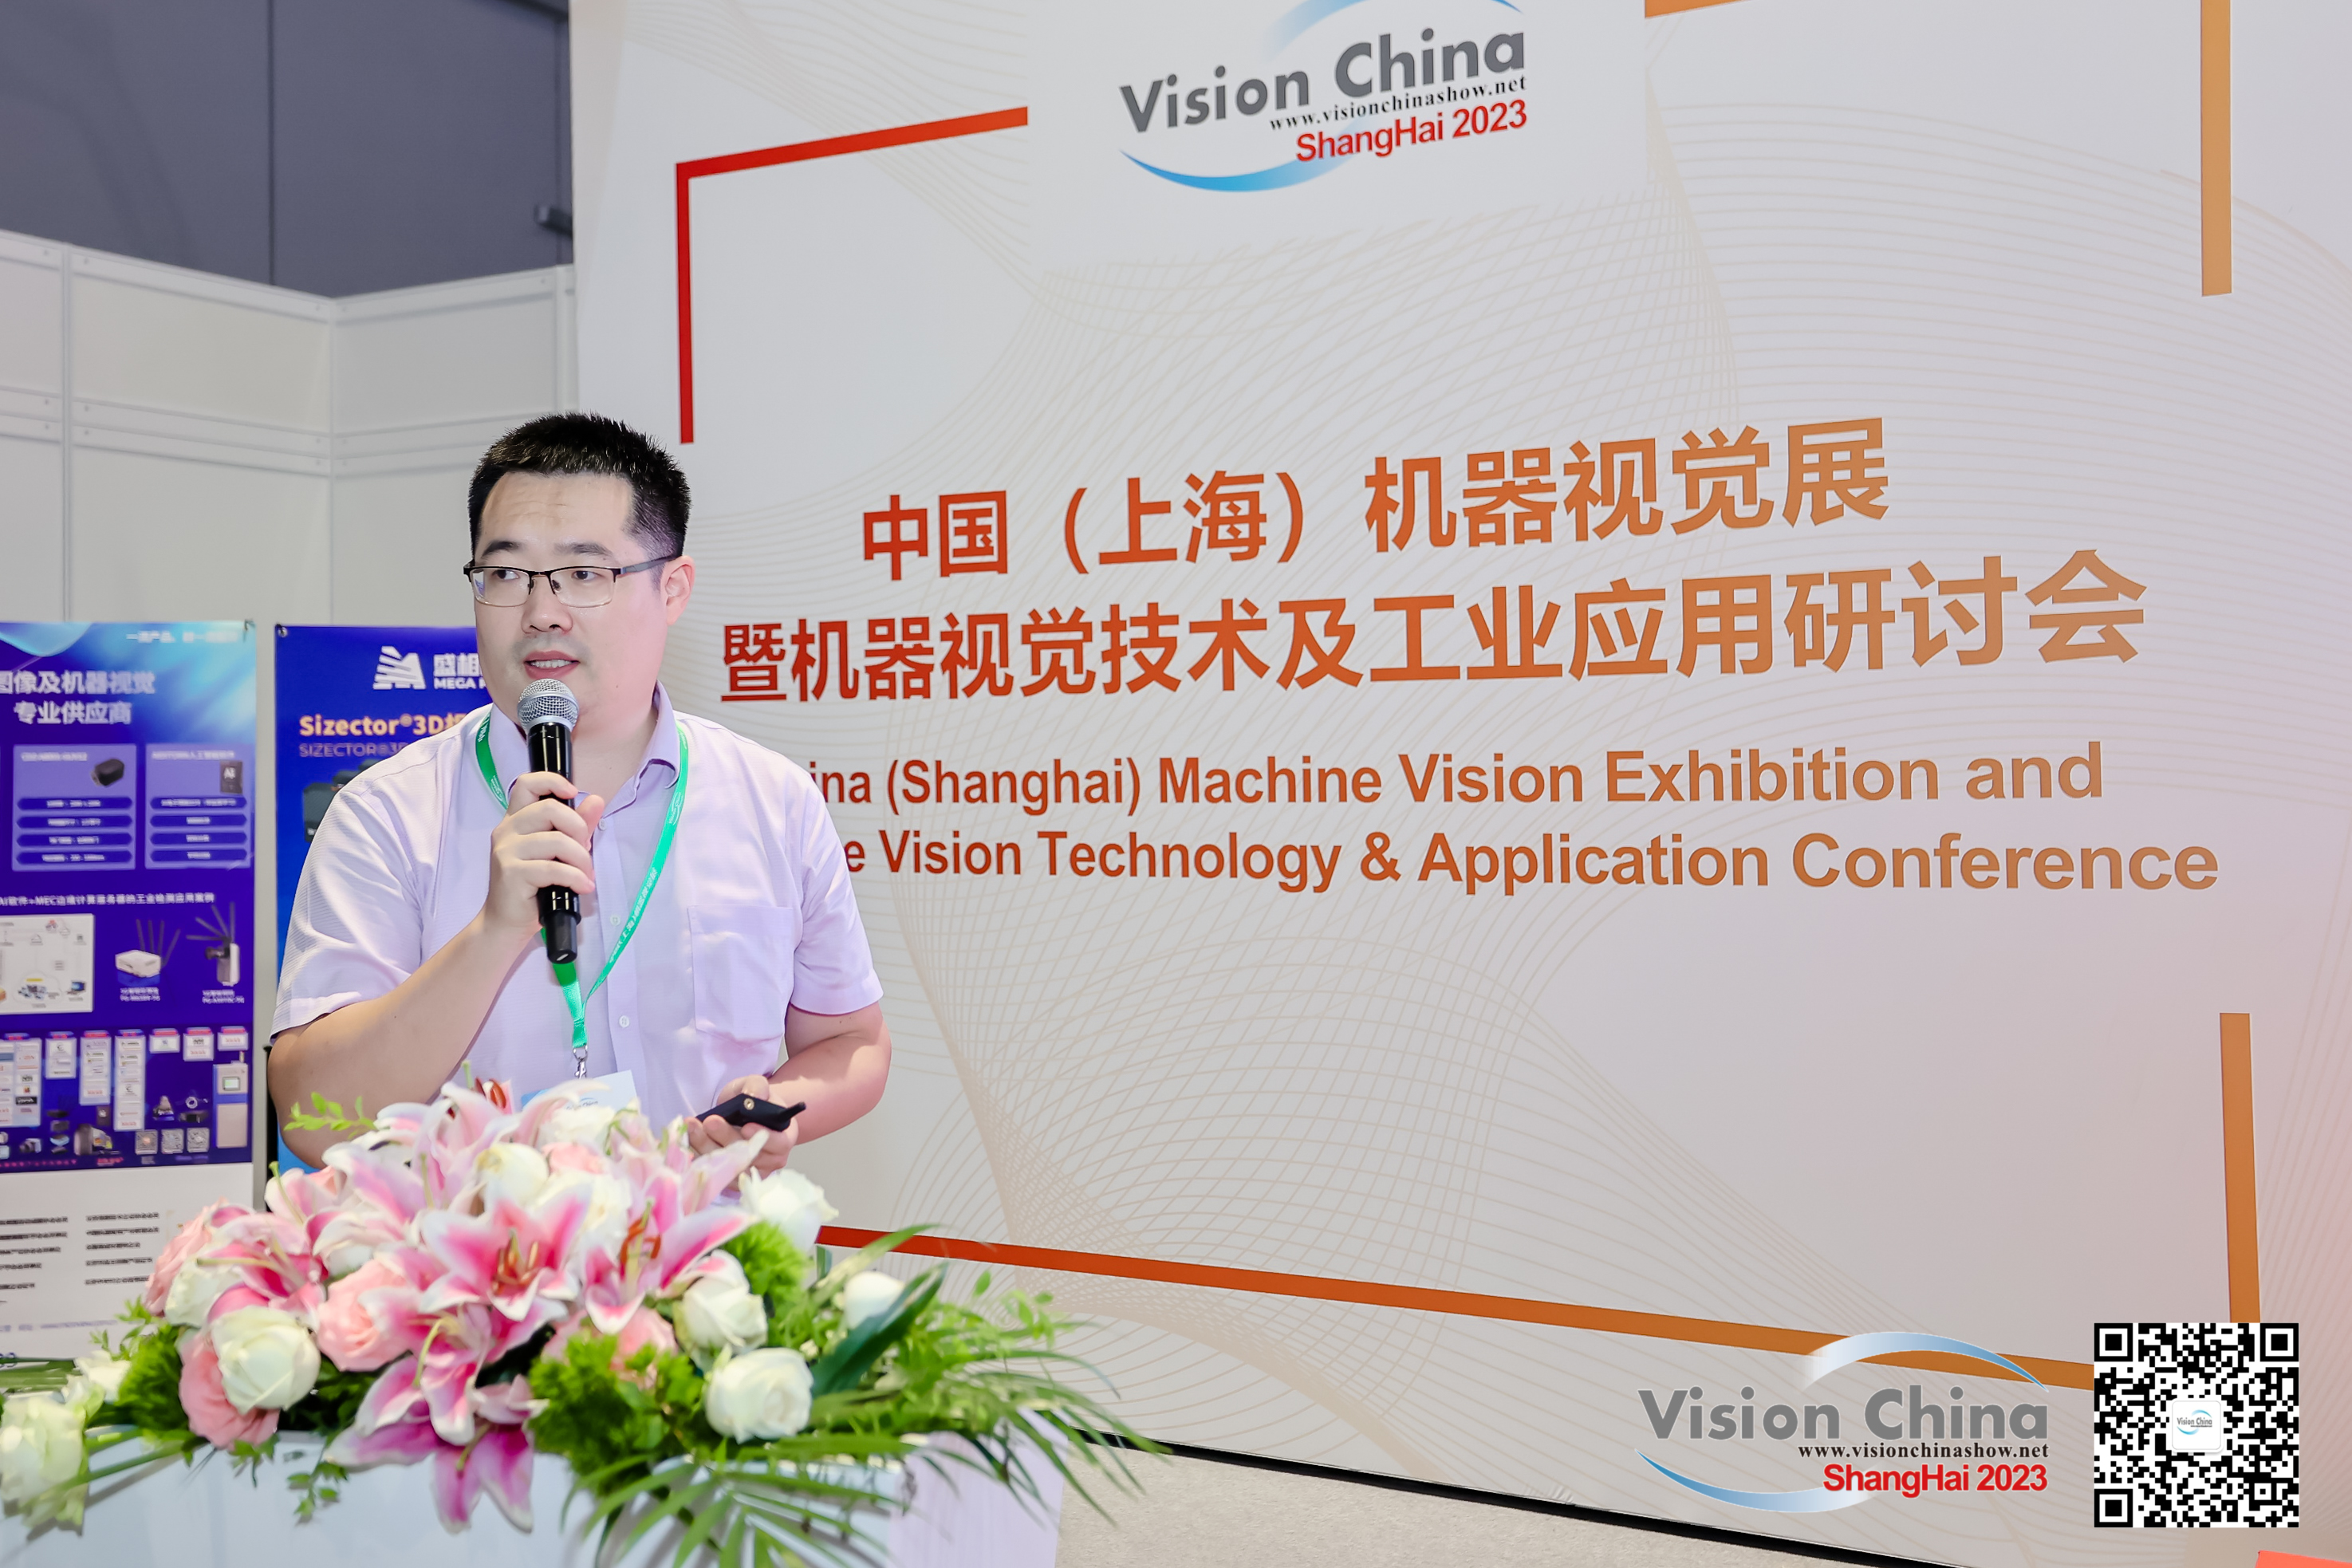 【微视展讯】上海机器视觉展（Vision China 上海 2023）第二天 精彩不断